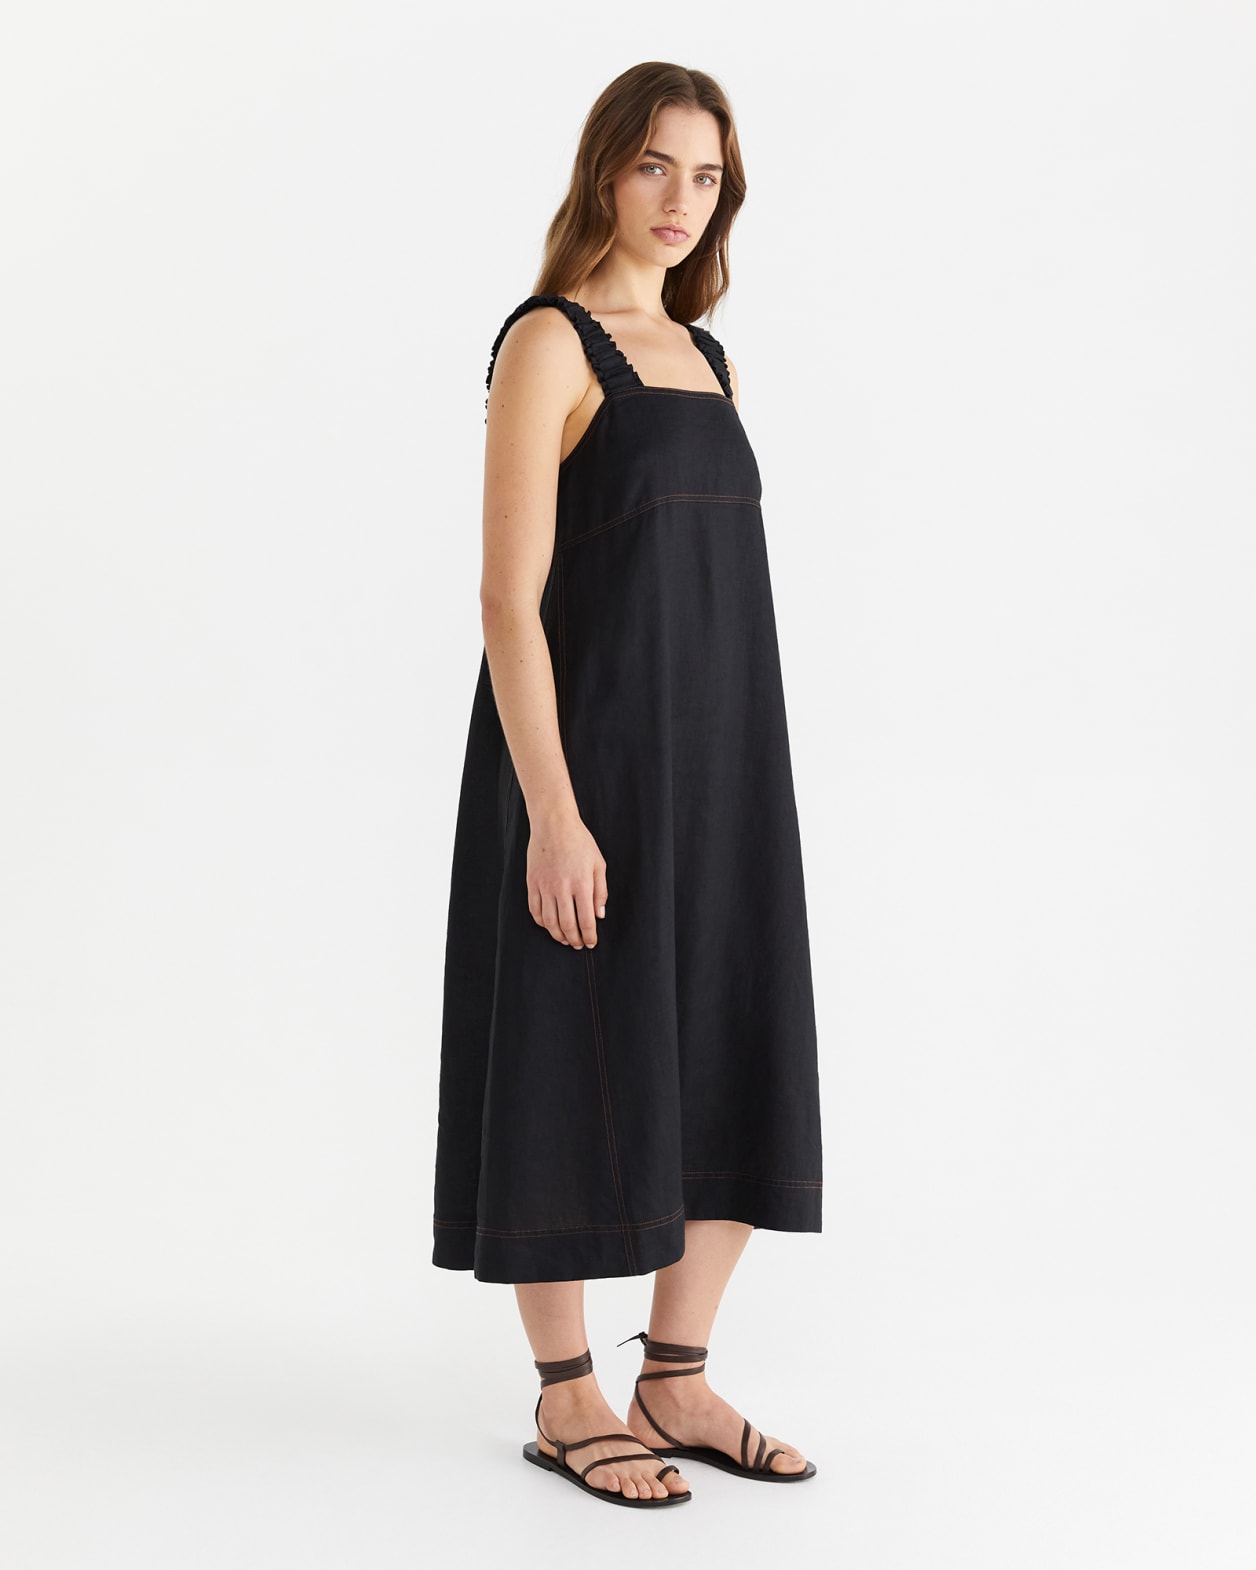 Kiki Elastic Strap Dress in BLACK